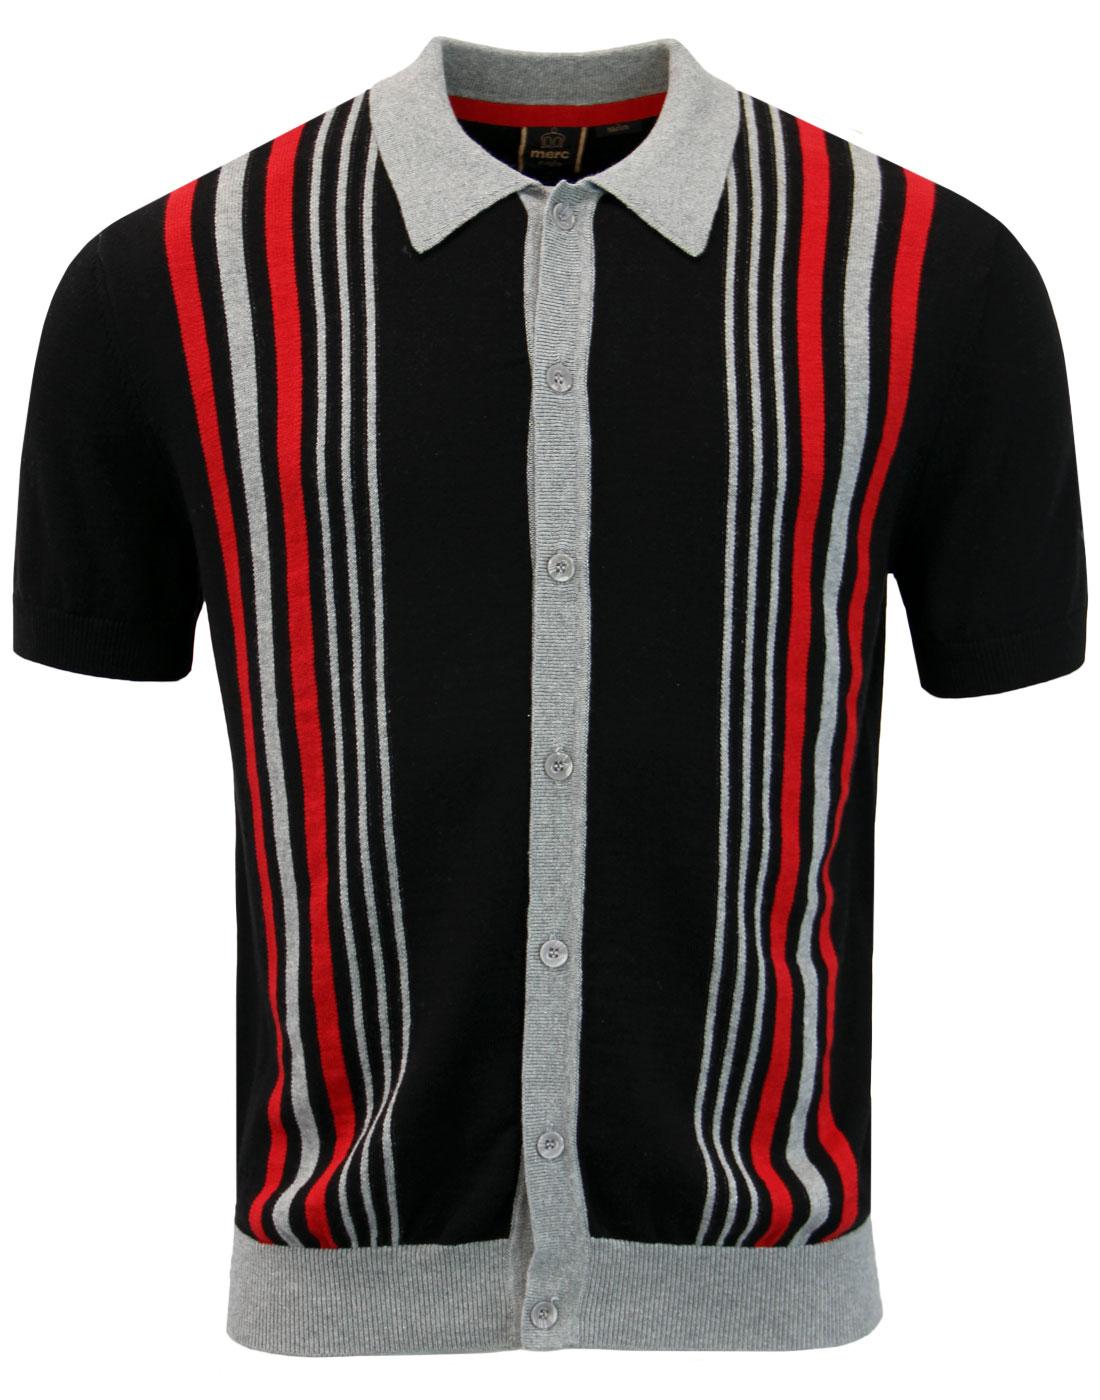 Nutley MERC Mod Stripe Knit Polo Cardigan BLACK